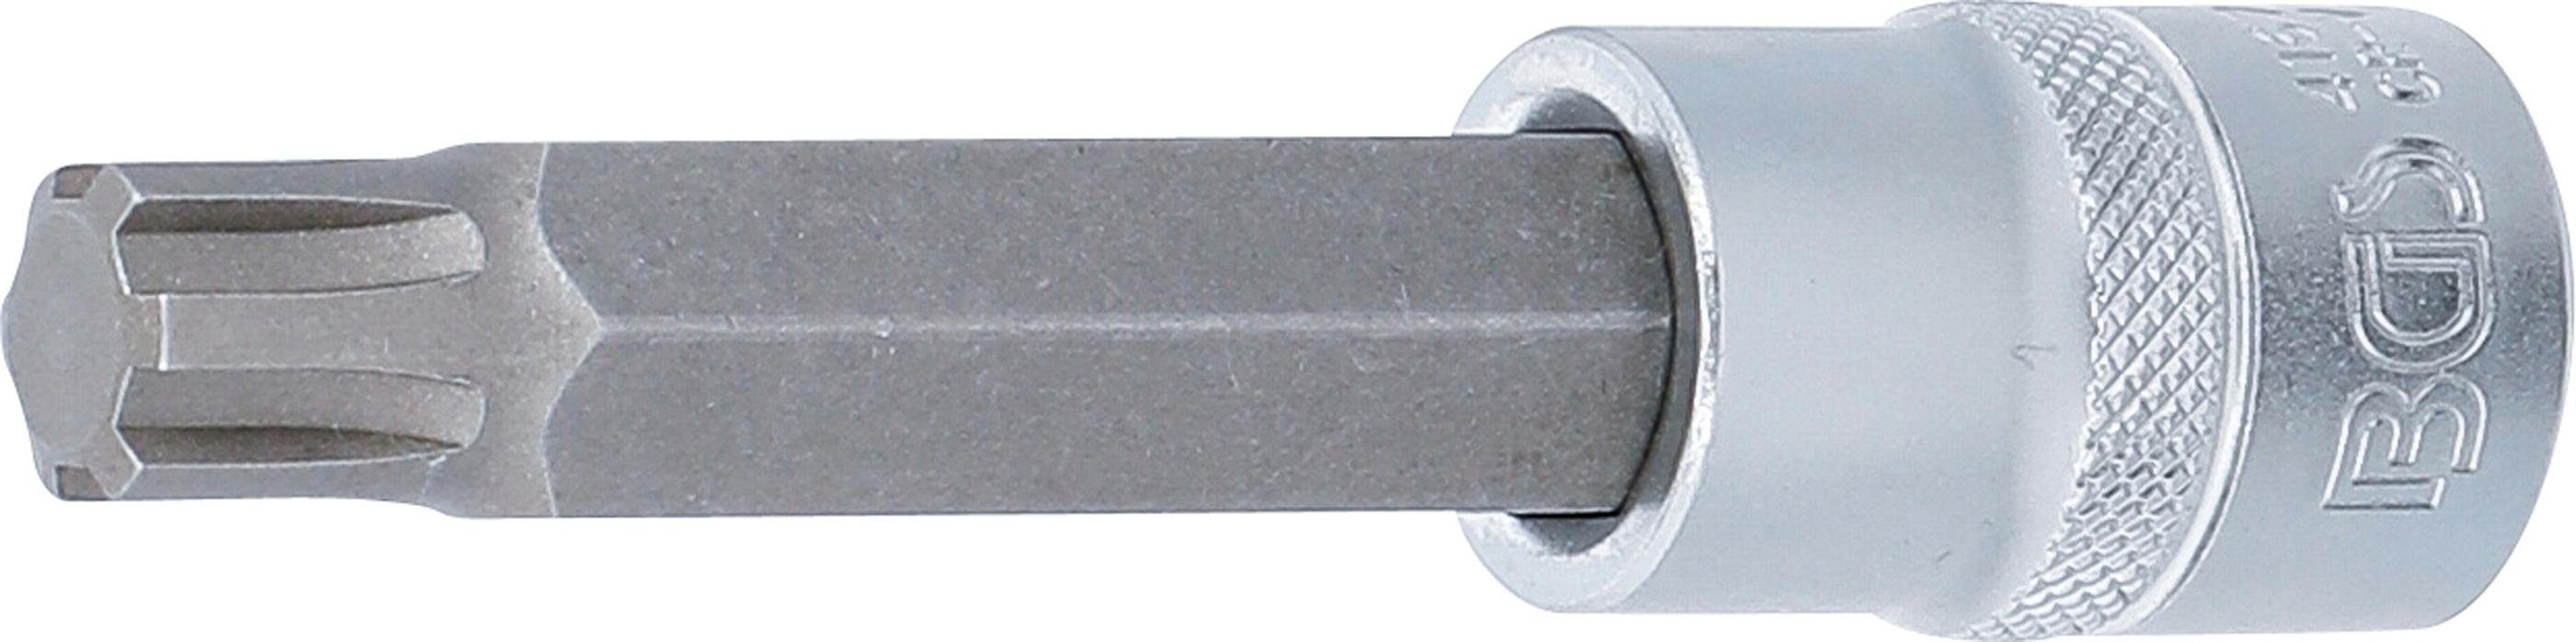 BGS technic Bit-Schraubendreher Bit-Einsatz, Länge 100 mm, Antrieb Innenvierkant 12,5 mm (1/2), Keil-Profil (für RIBE) M13